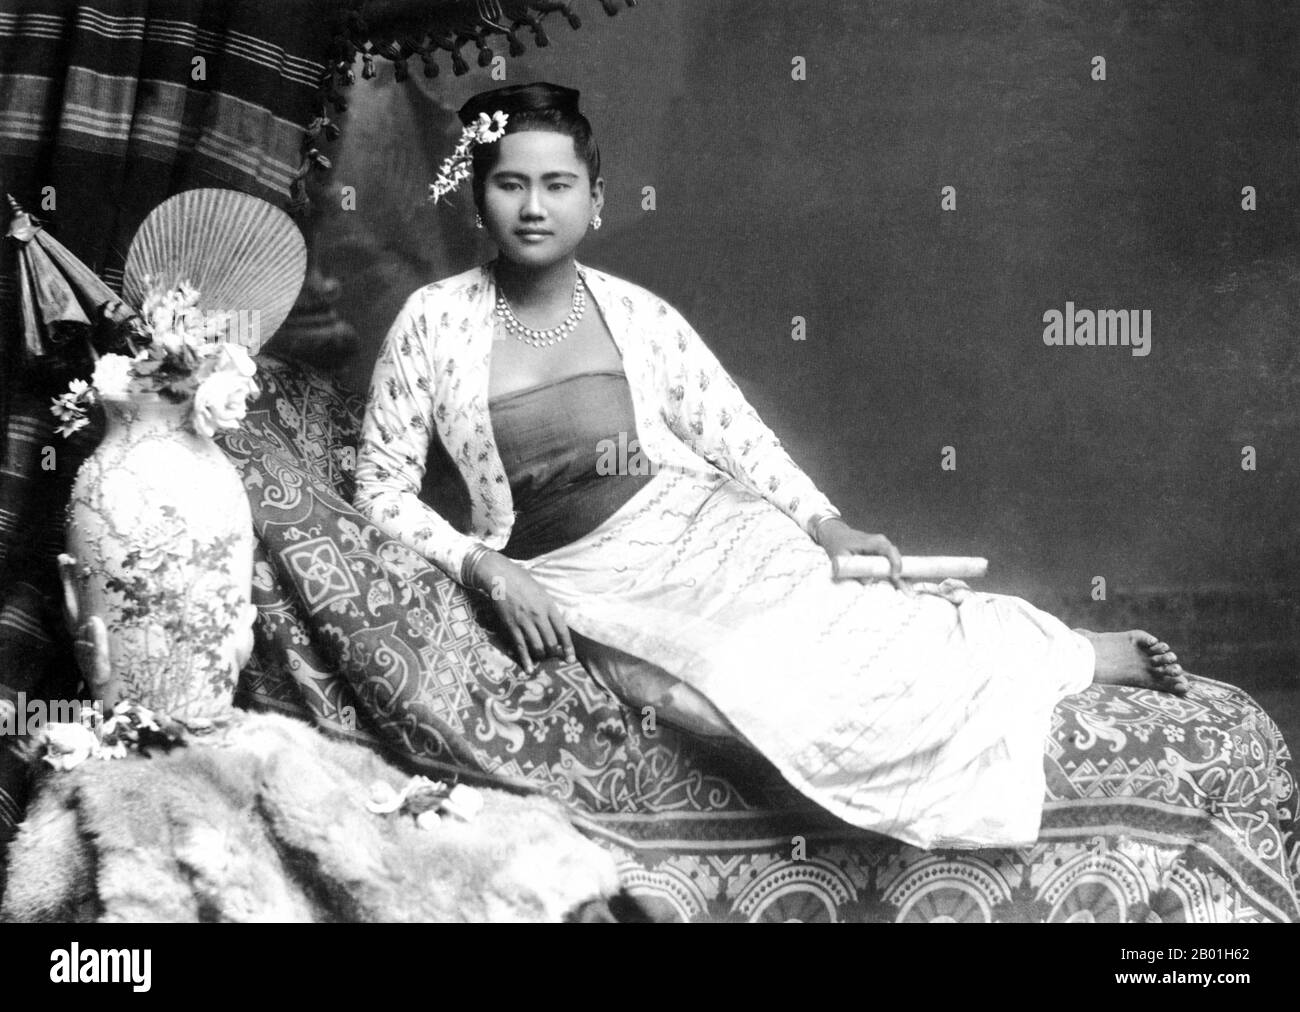 Birmanie/Myanmar : Portrait en studio par Philip Adolphe Klier (1845 - 27 mars 1911) d'une jeune femme birmane avec un chéroot, probablement Rangoon/Yangon, 1895. Philip Adolphe Klier était un photographe allemand surtout connu pour ses photographies de Birmanie / Myanmar coloniale. En 1871, il est photographe professionnel à Moulmein, en Birmanie. Son entreprise comprenait un travail d'opticien, d'horloger et de bijoutier ainsi que la gestion de la firme connue sous le nom de Murken & Klier. Vers 1880, Klier déménage à Rangoon, la plus grande ville de Birmanie, devenue le centre du pouvoir indo-britannique depuis la conquête du delta de l’Irrawaddy en 1852. Banque D'Images